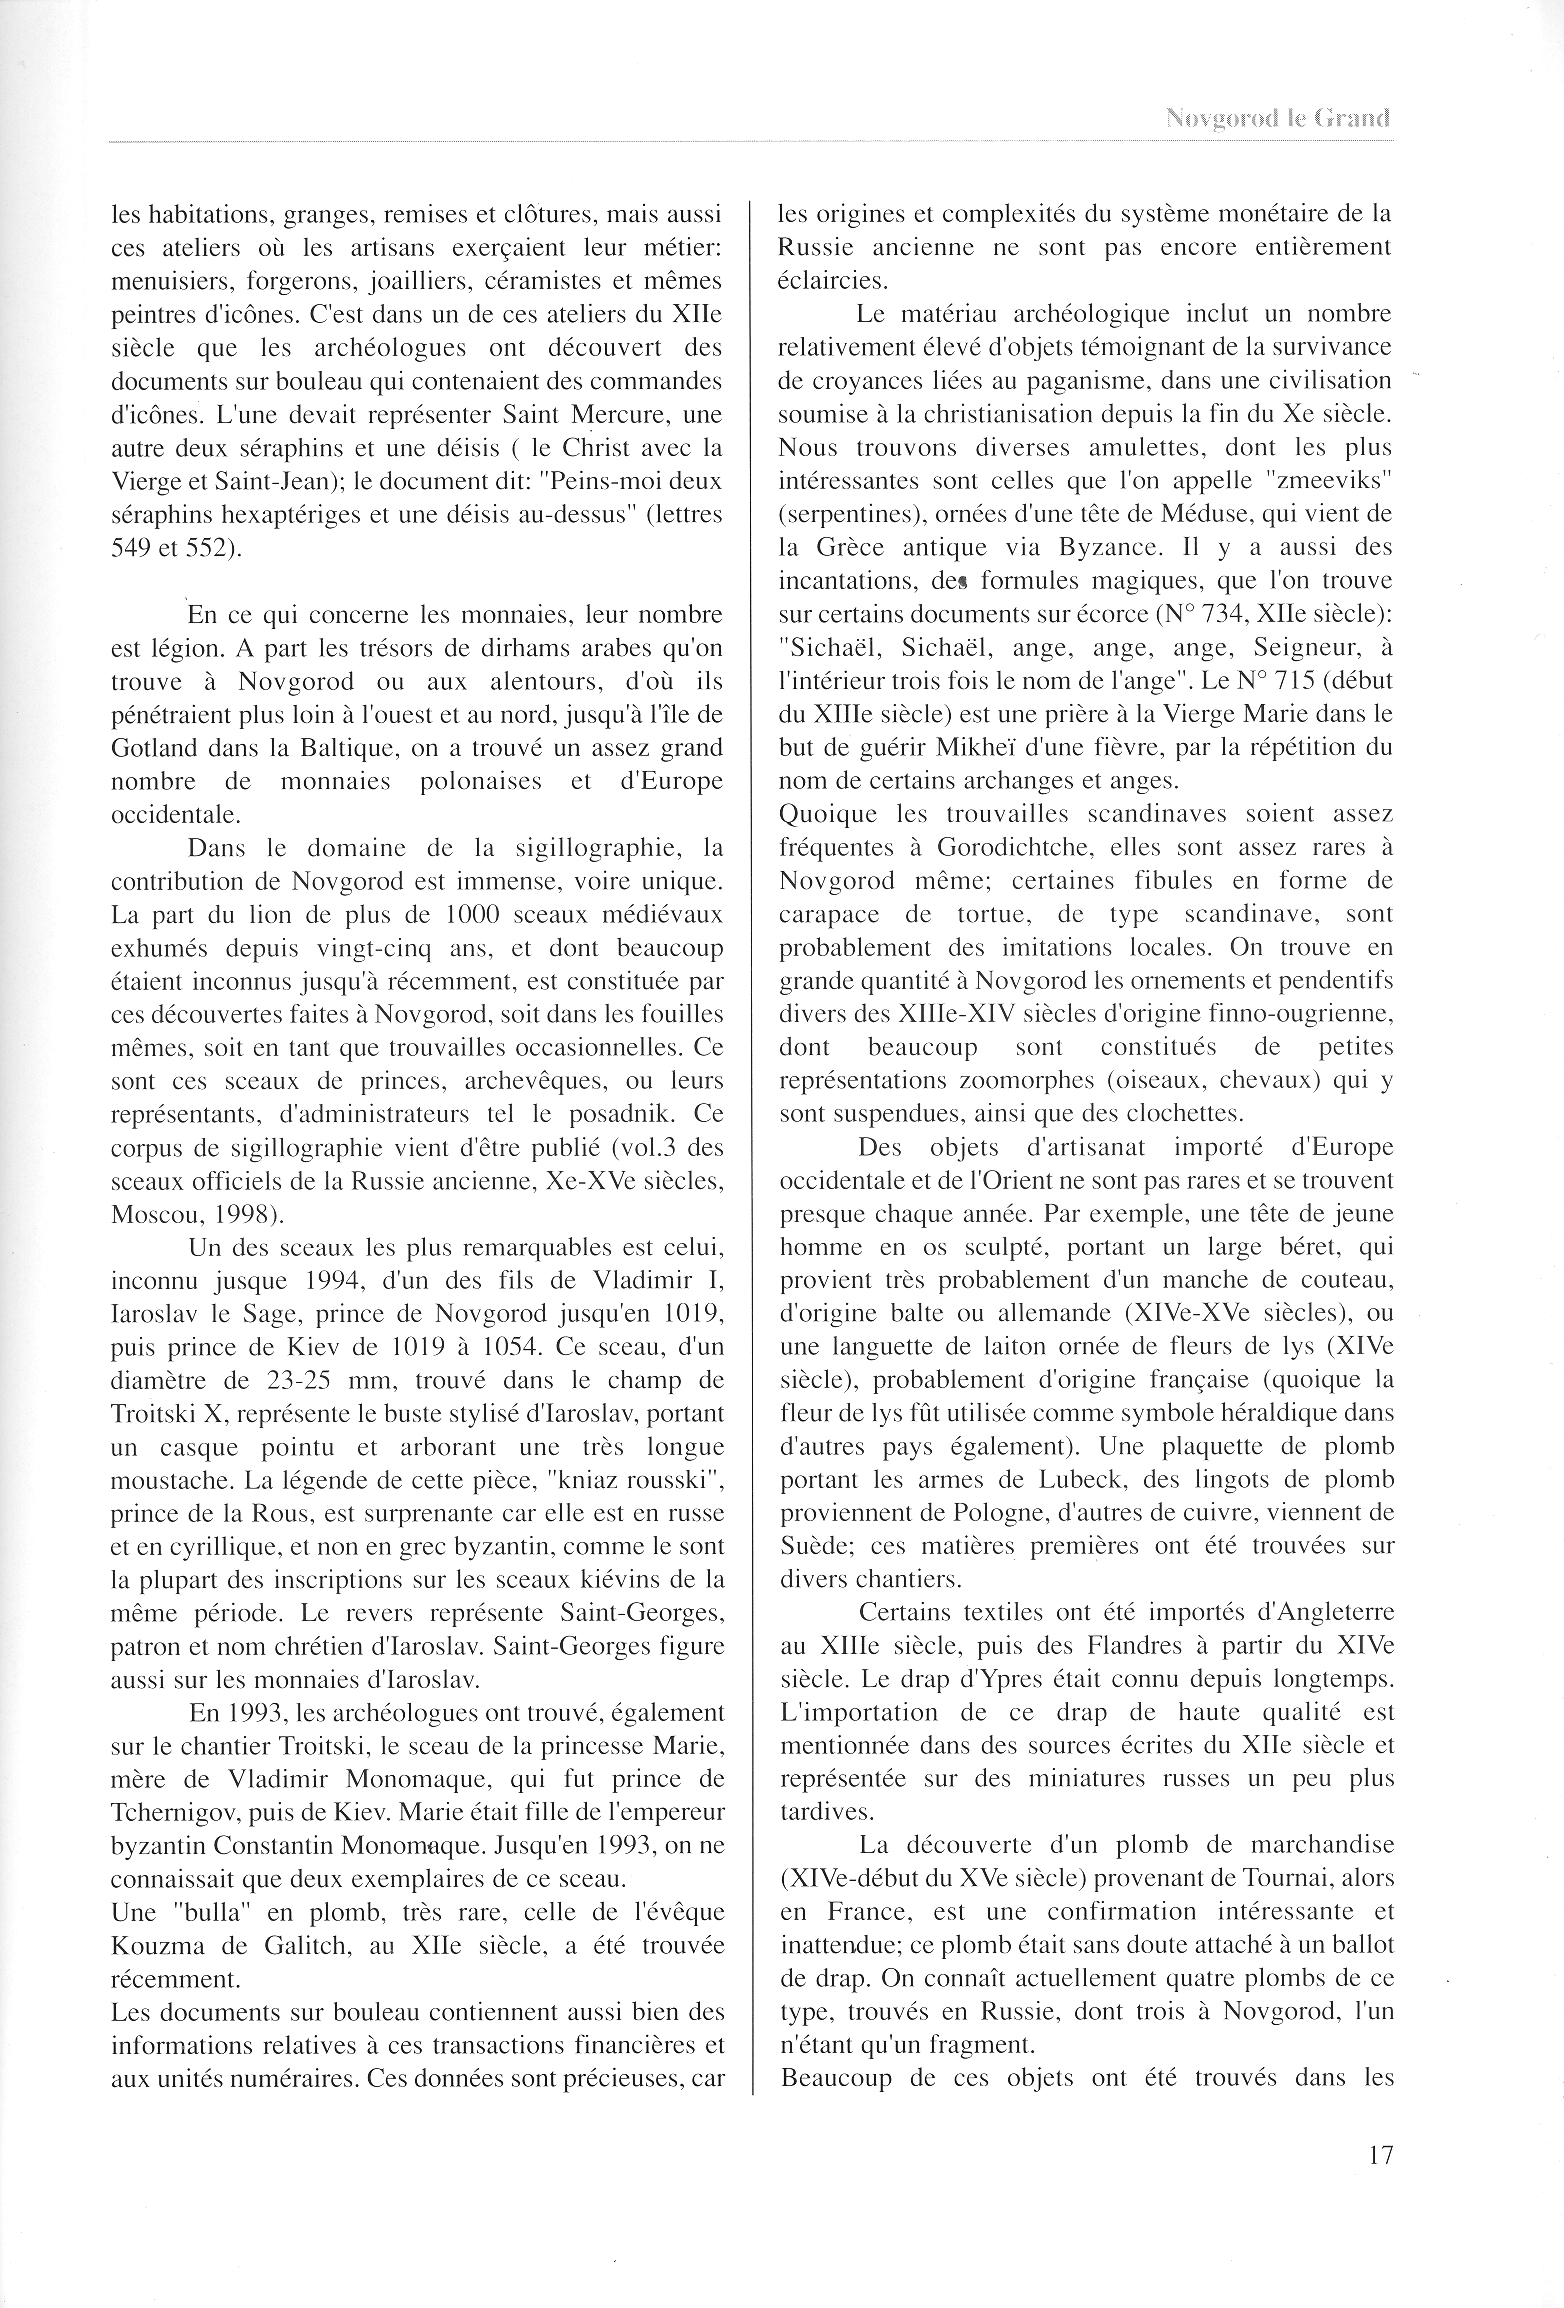 FPPR Revue 01 2002 19. Page 17. Novgorod le Grand. Anatomie d|une métropole médiévale russe par Jean Blankoff